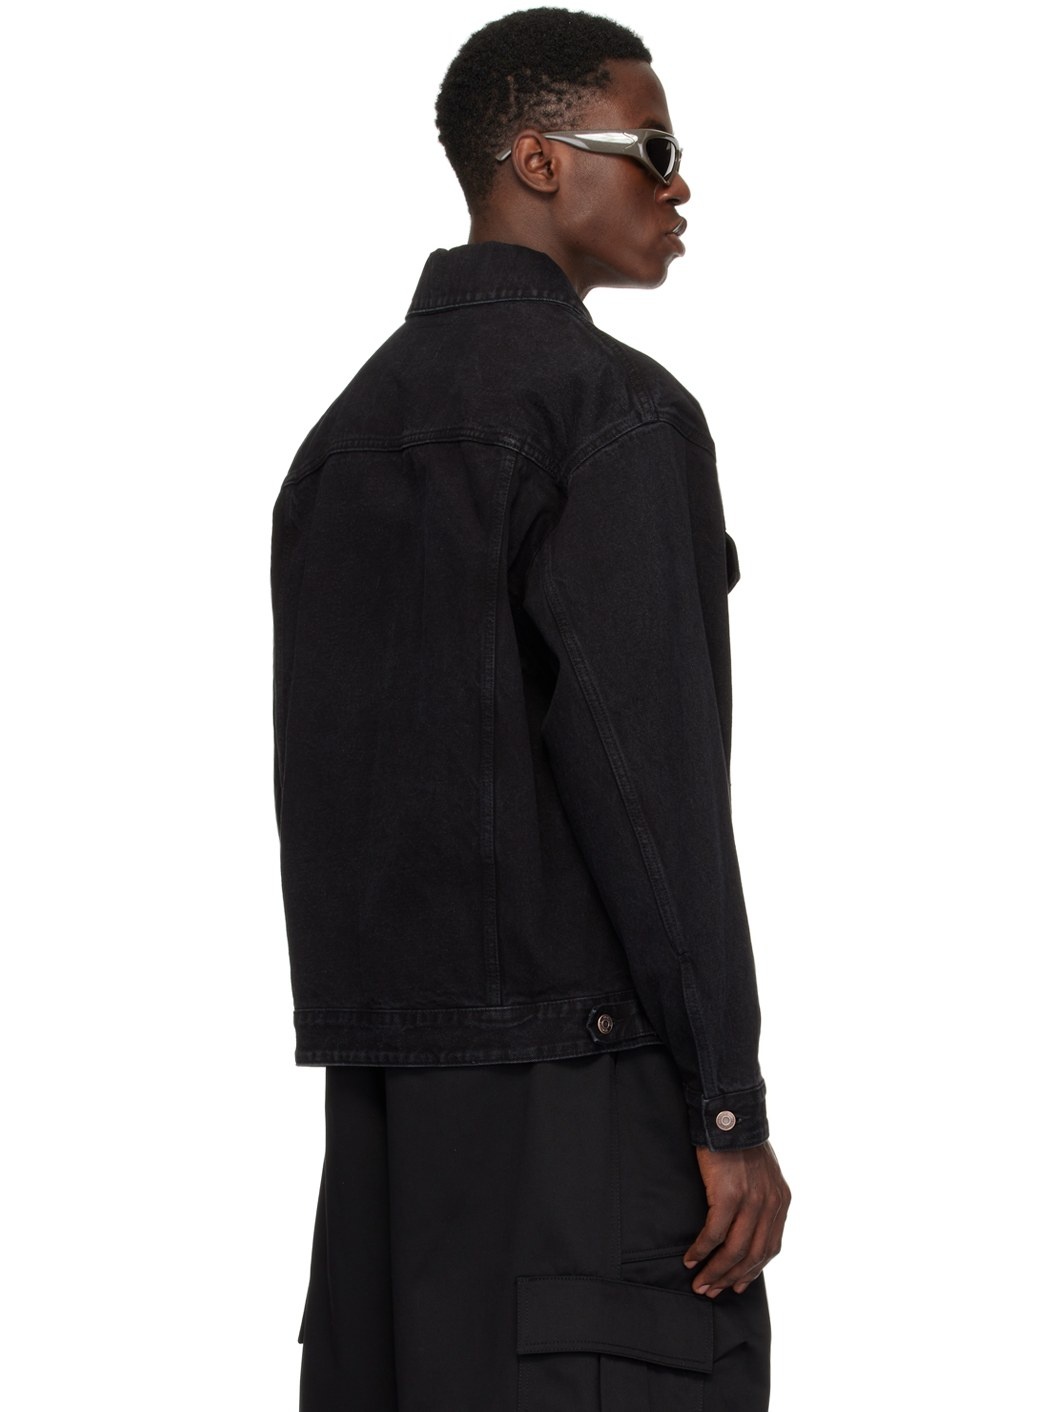 Black Printed Denim Jacket - 3